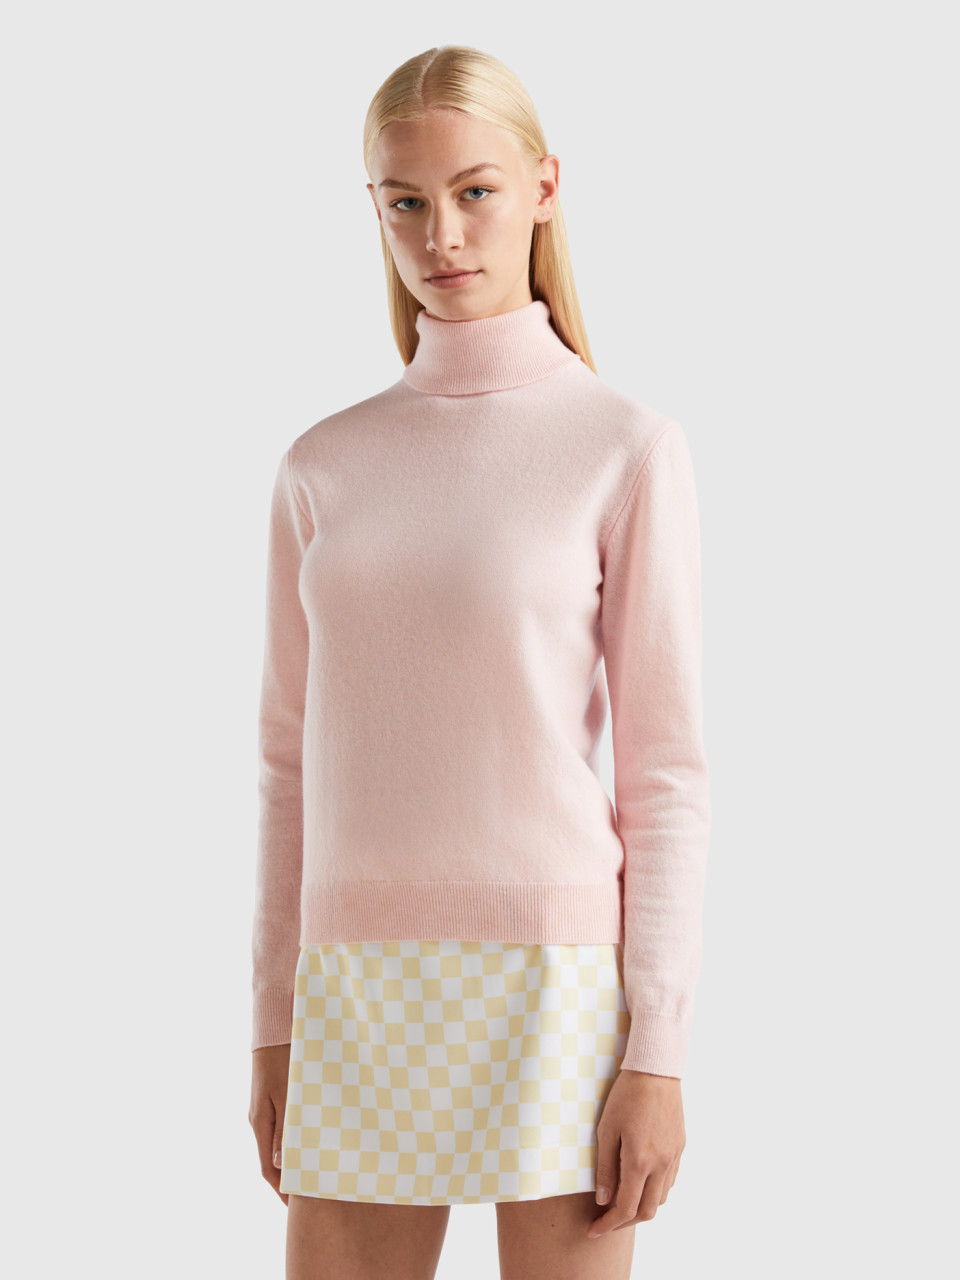 Benetton, Pastel Pink Turtleneck In Pure Merino Wool, Pastel Pink, Women